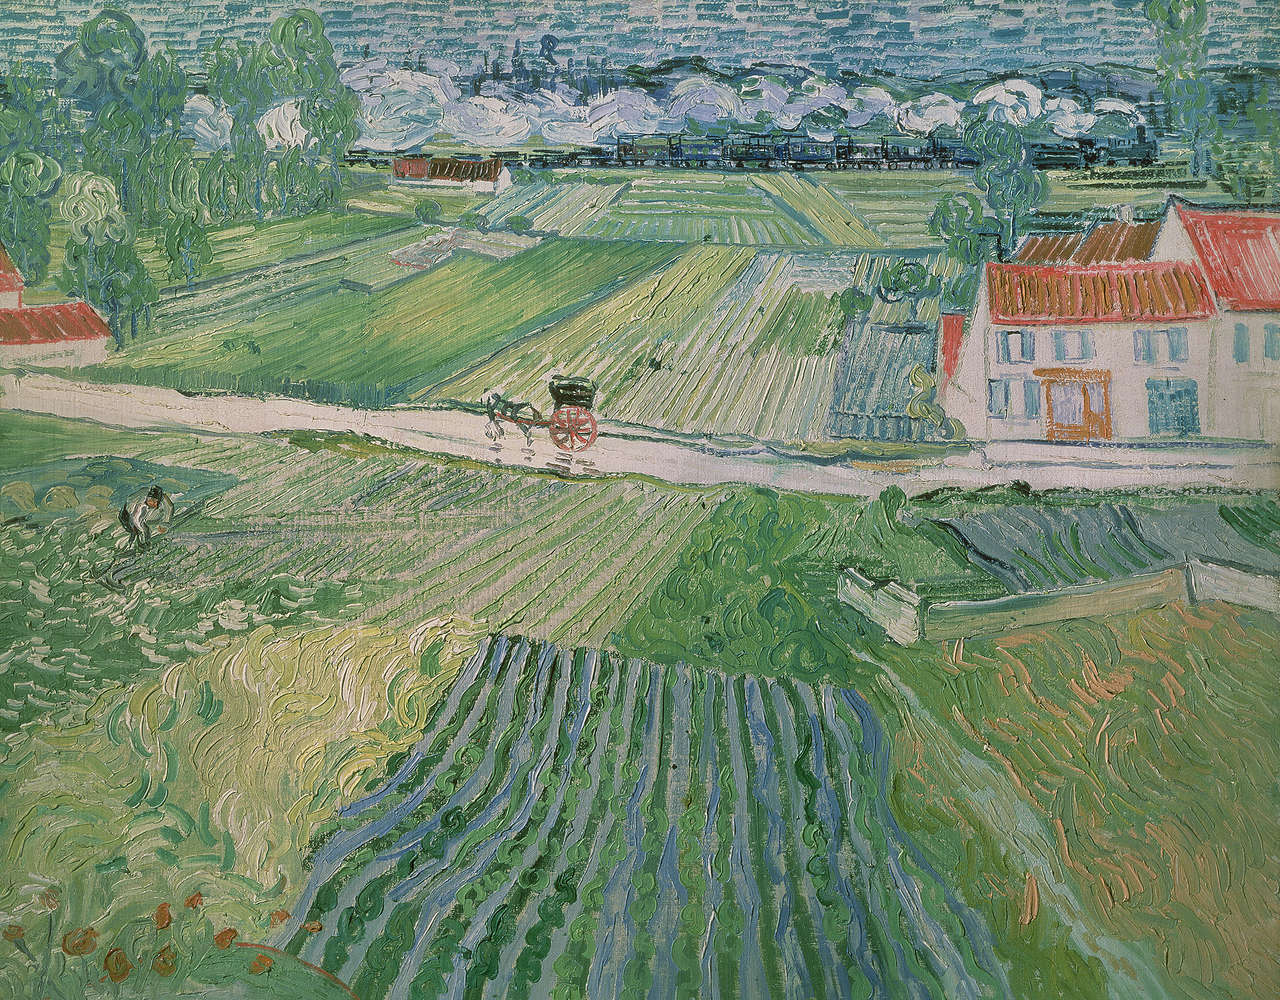             Mural "Paisaje cerca de Auvers después de la lluvia" de Vincent van Gogh
        